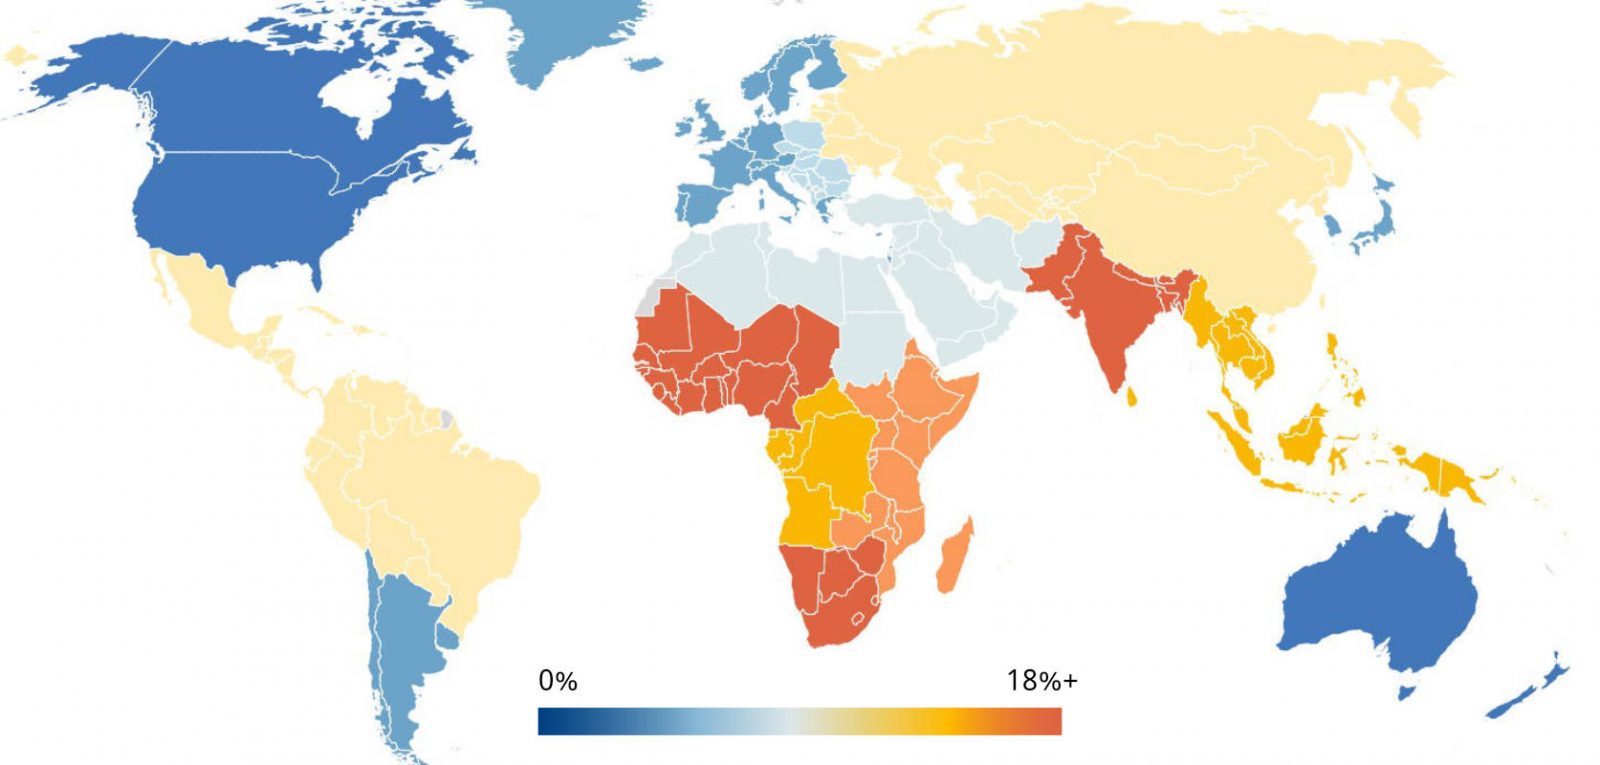 Mapa del mundo que muestra los índices de pérdida de visión, elevados en África y el sur de Asia